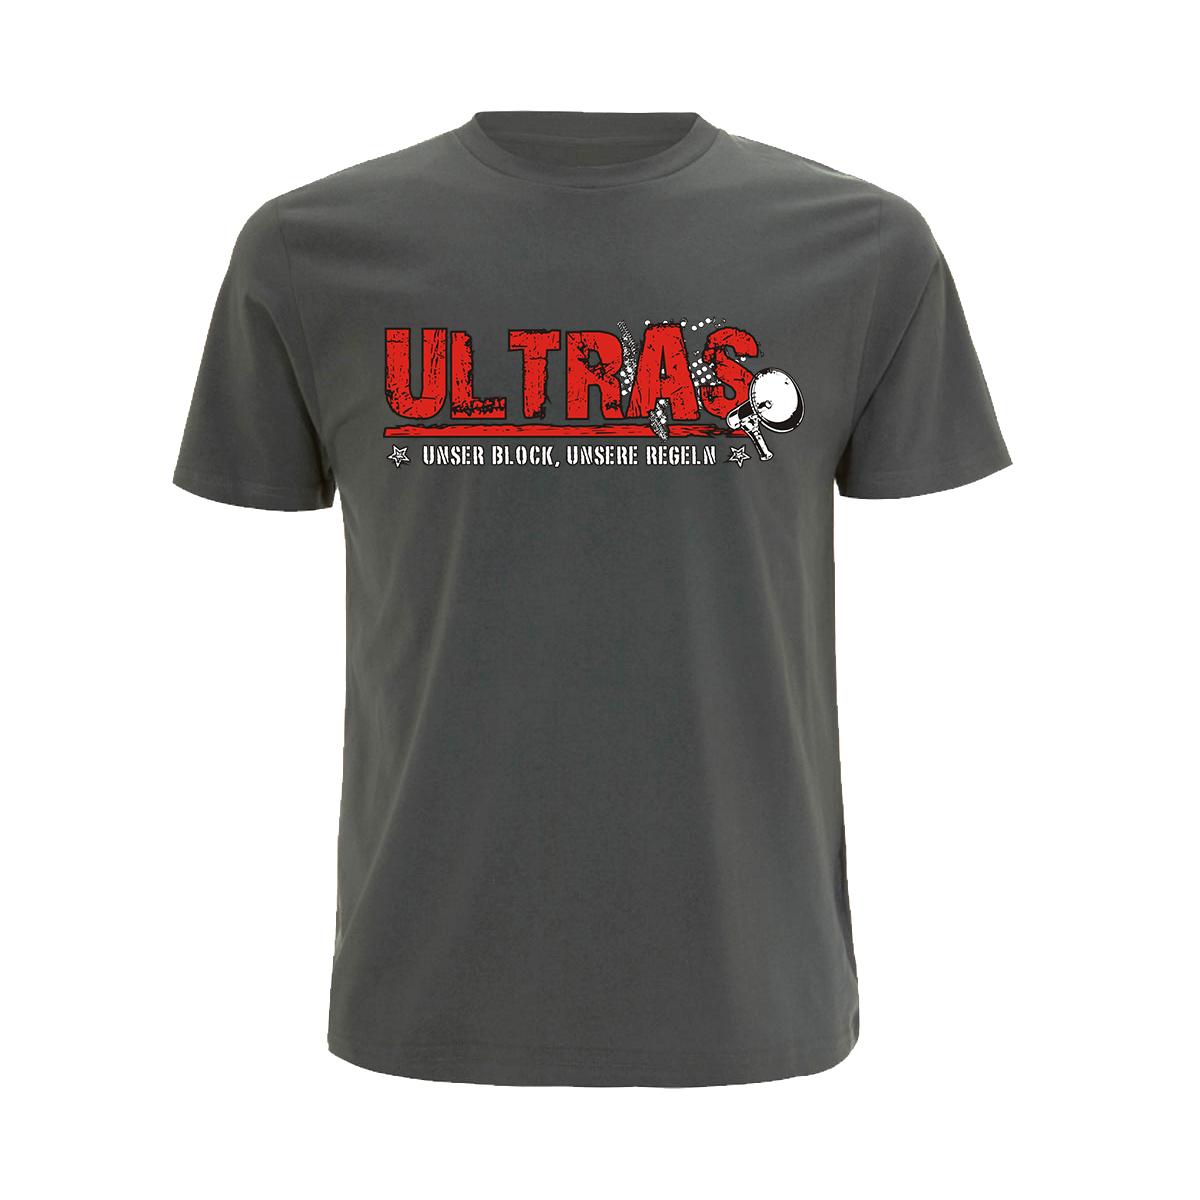 Ultras - Unser Block unsere Regeln - Männer T-Shirt - grau